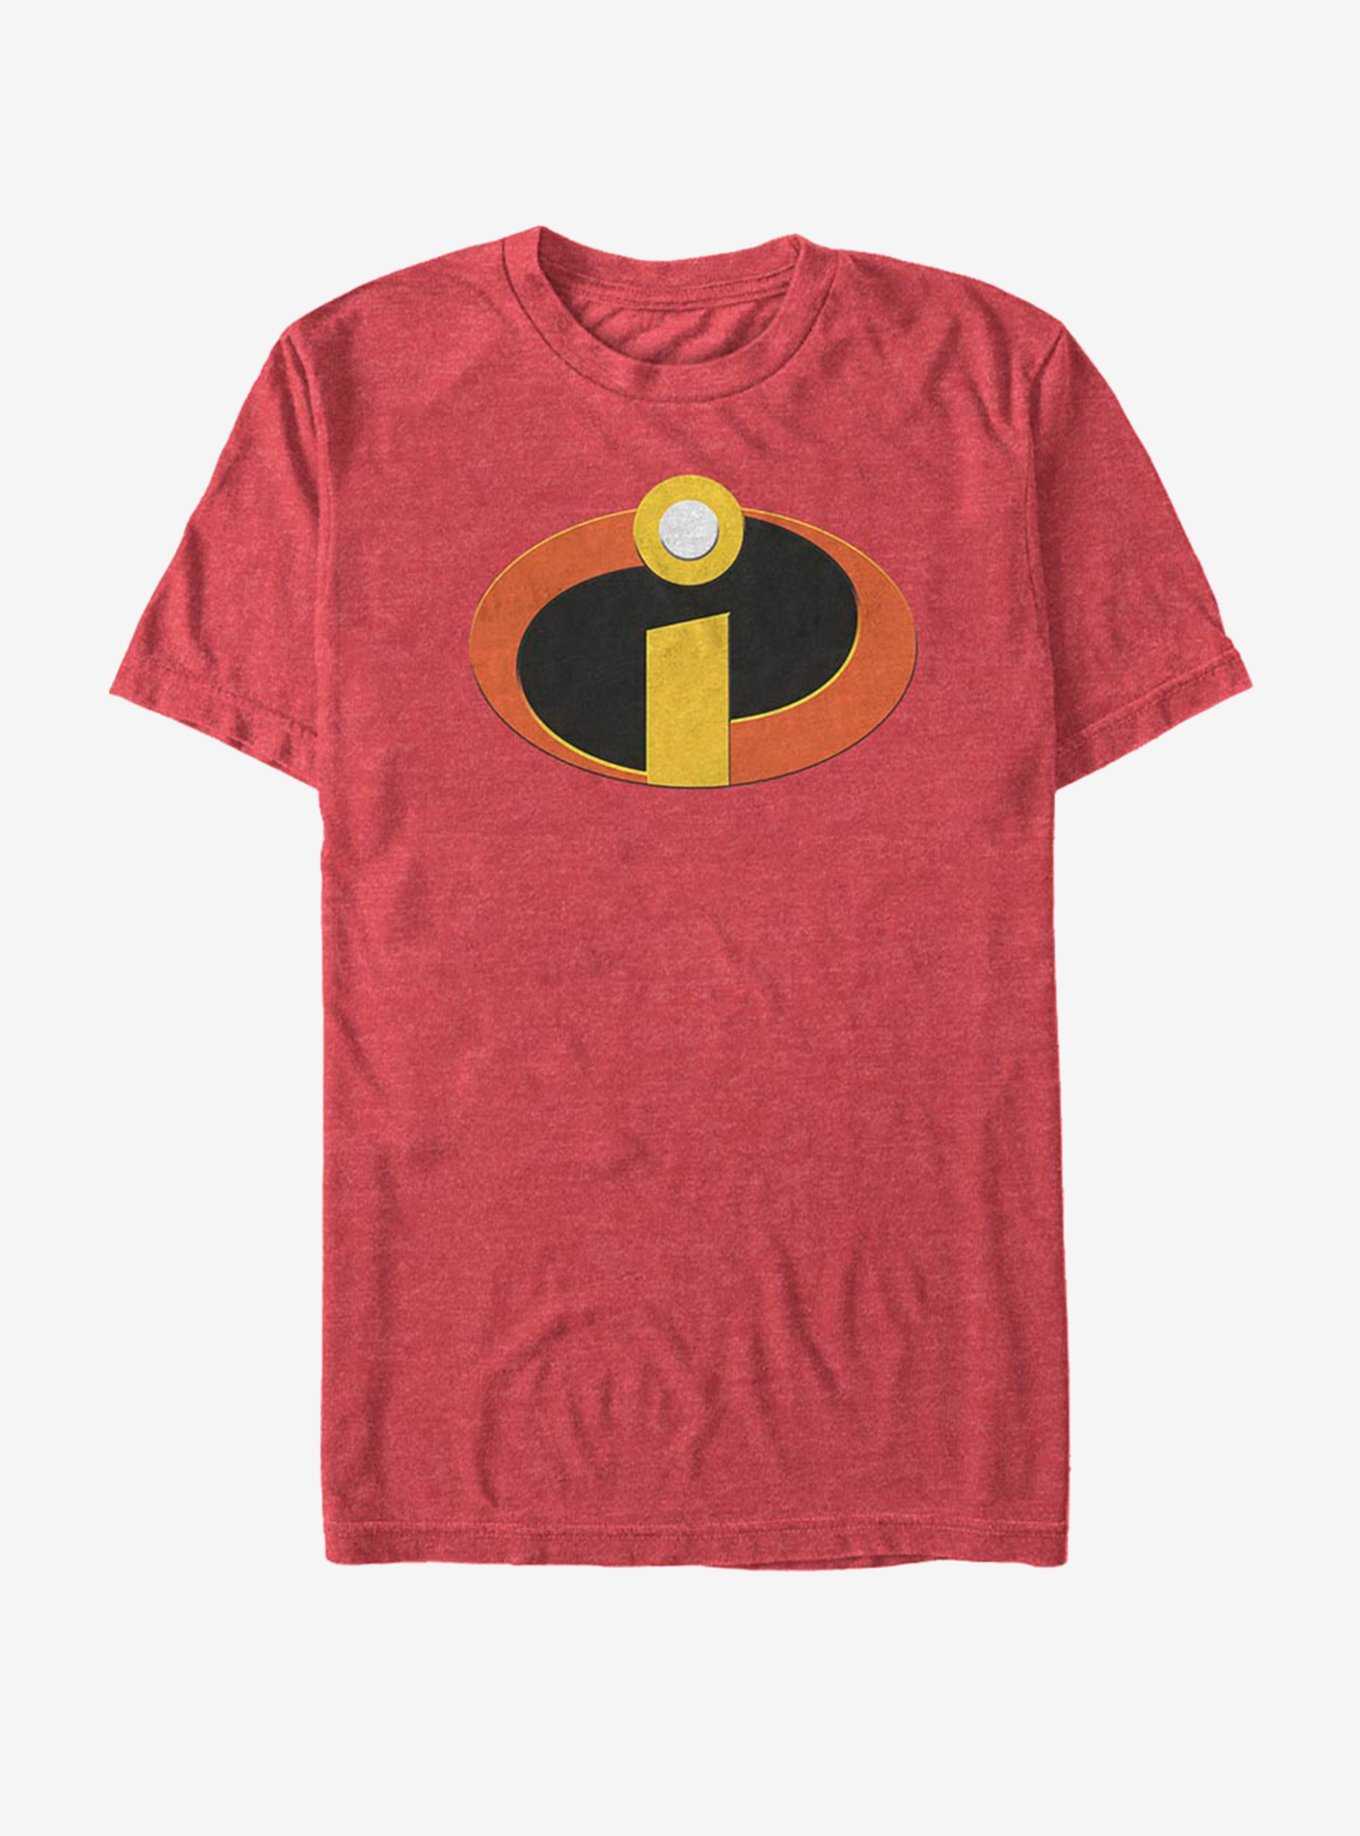 Disney Pixar The Incredibles Incredipop T-Shirt, , hi-res